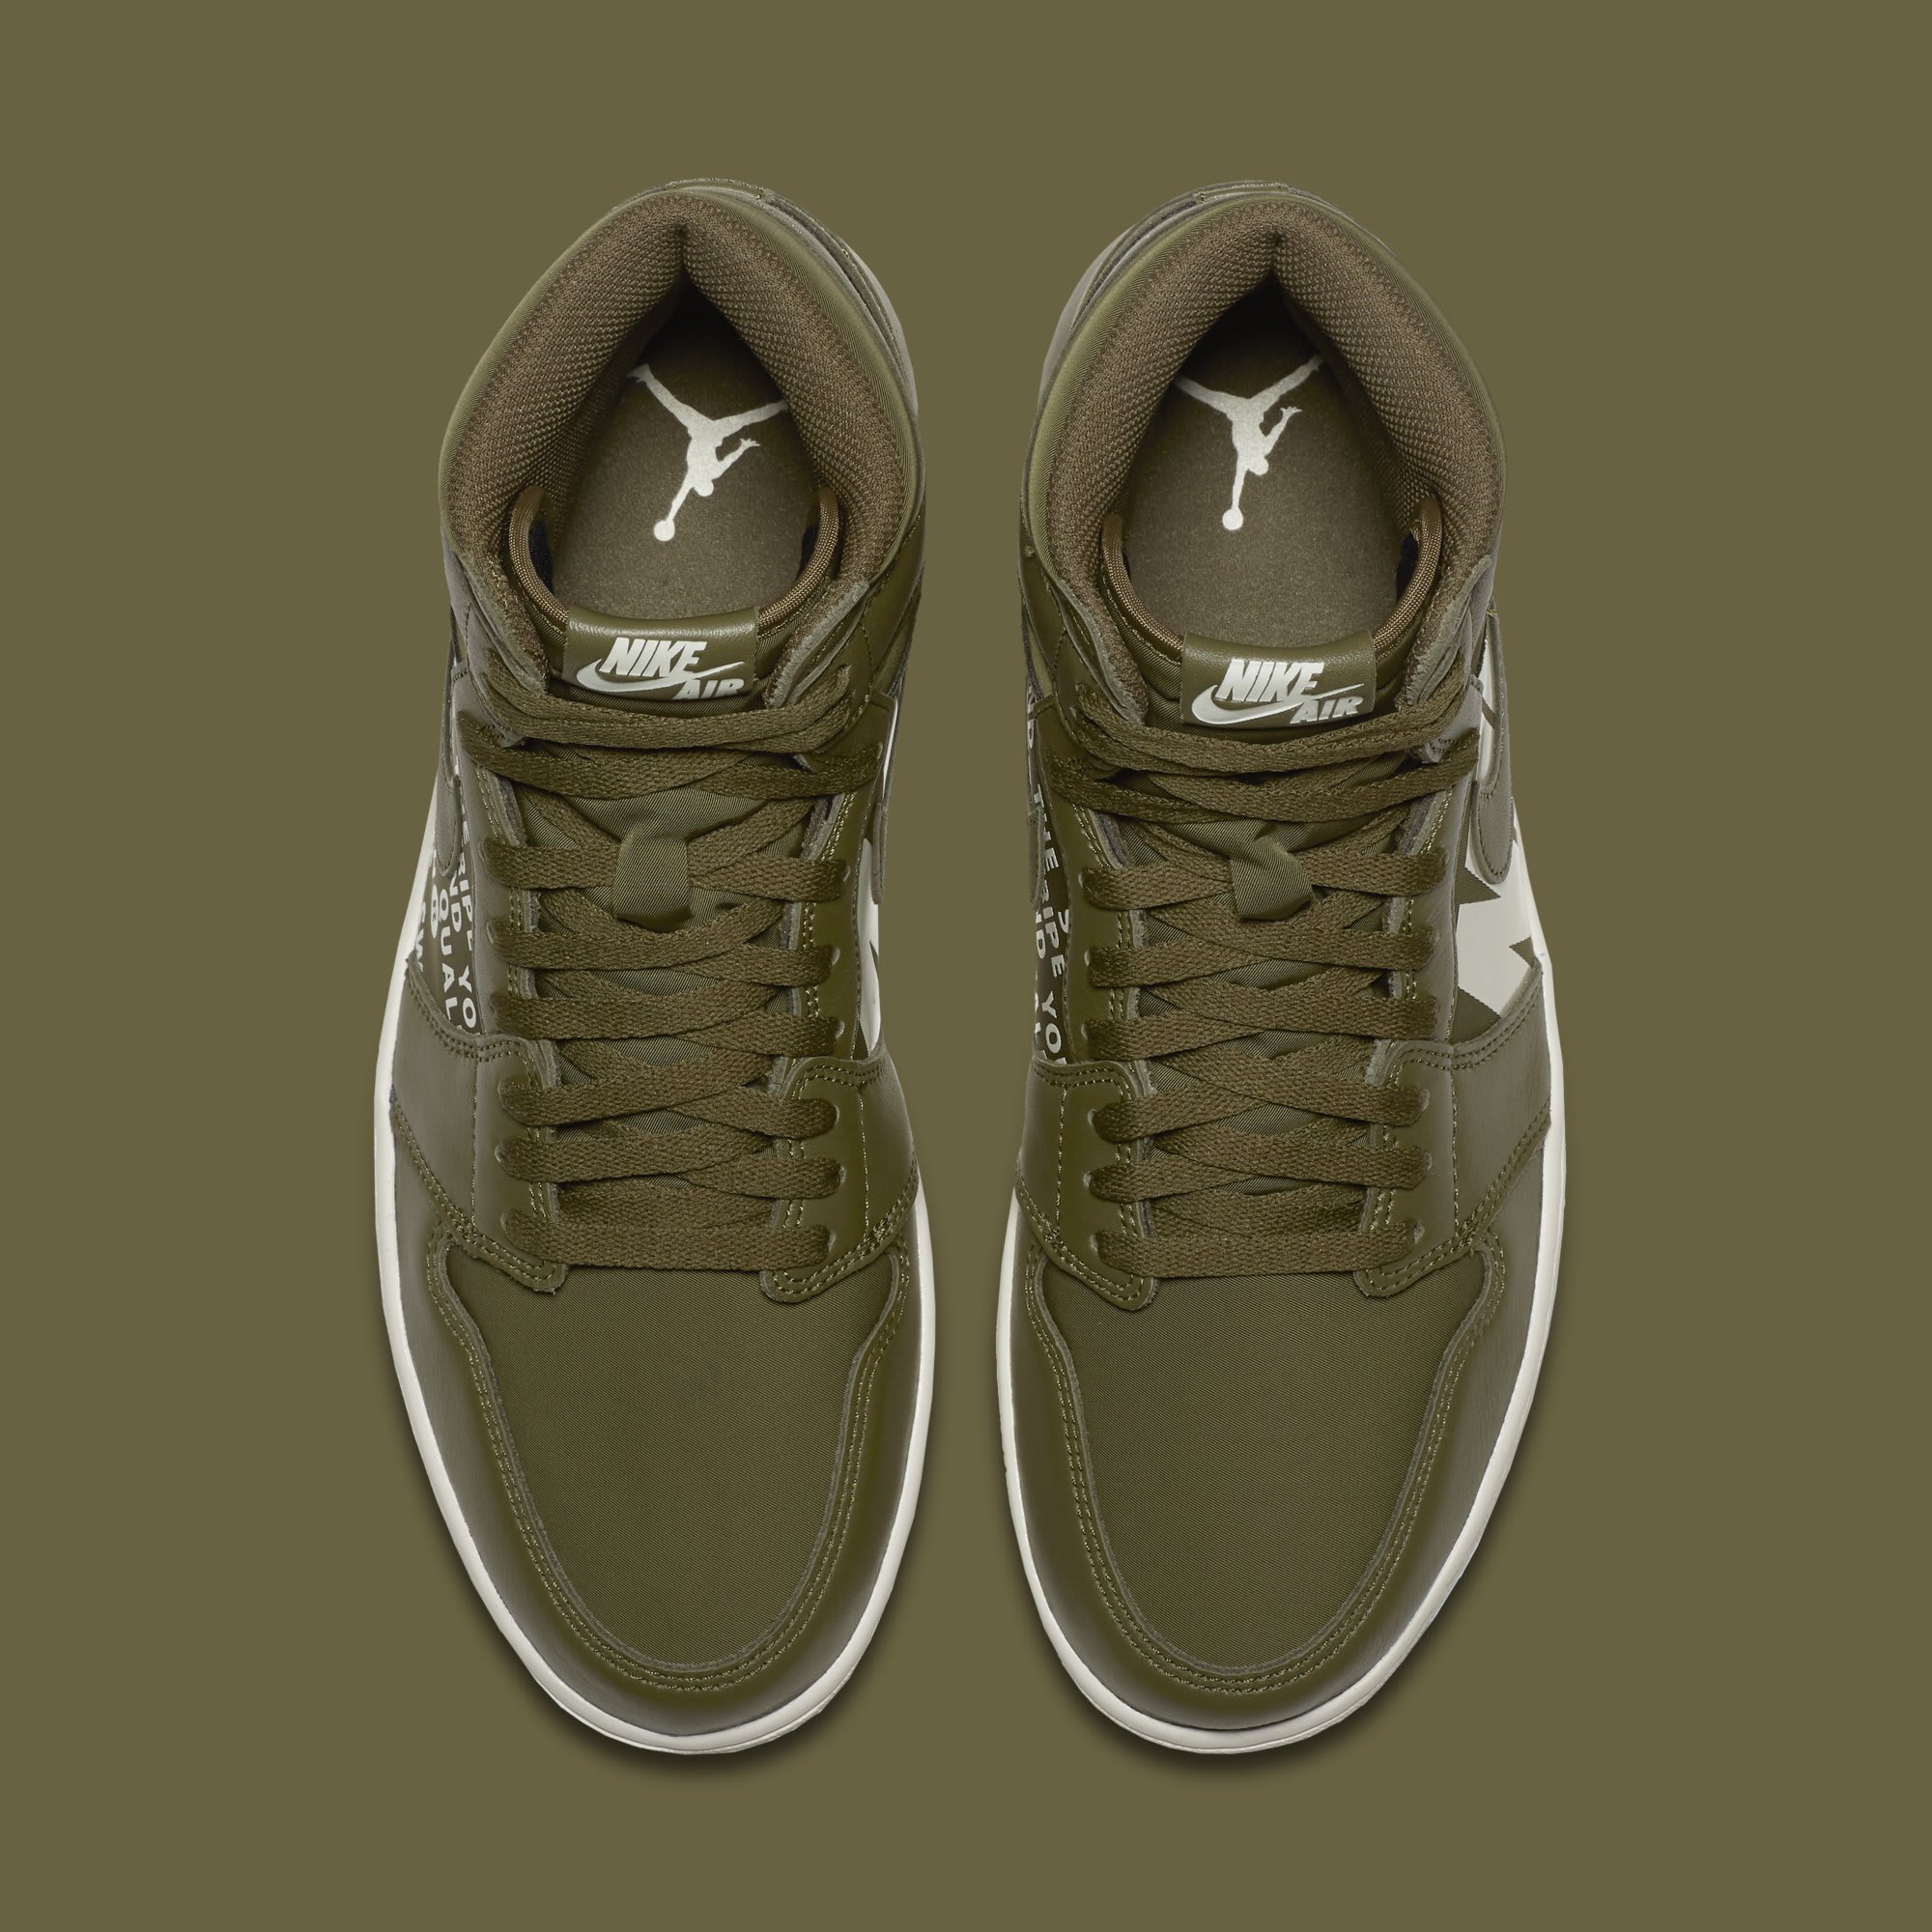 Air Jordan 1 &#x27;Nike Air Pack/Olive&#x27; 555088-300 (Top)